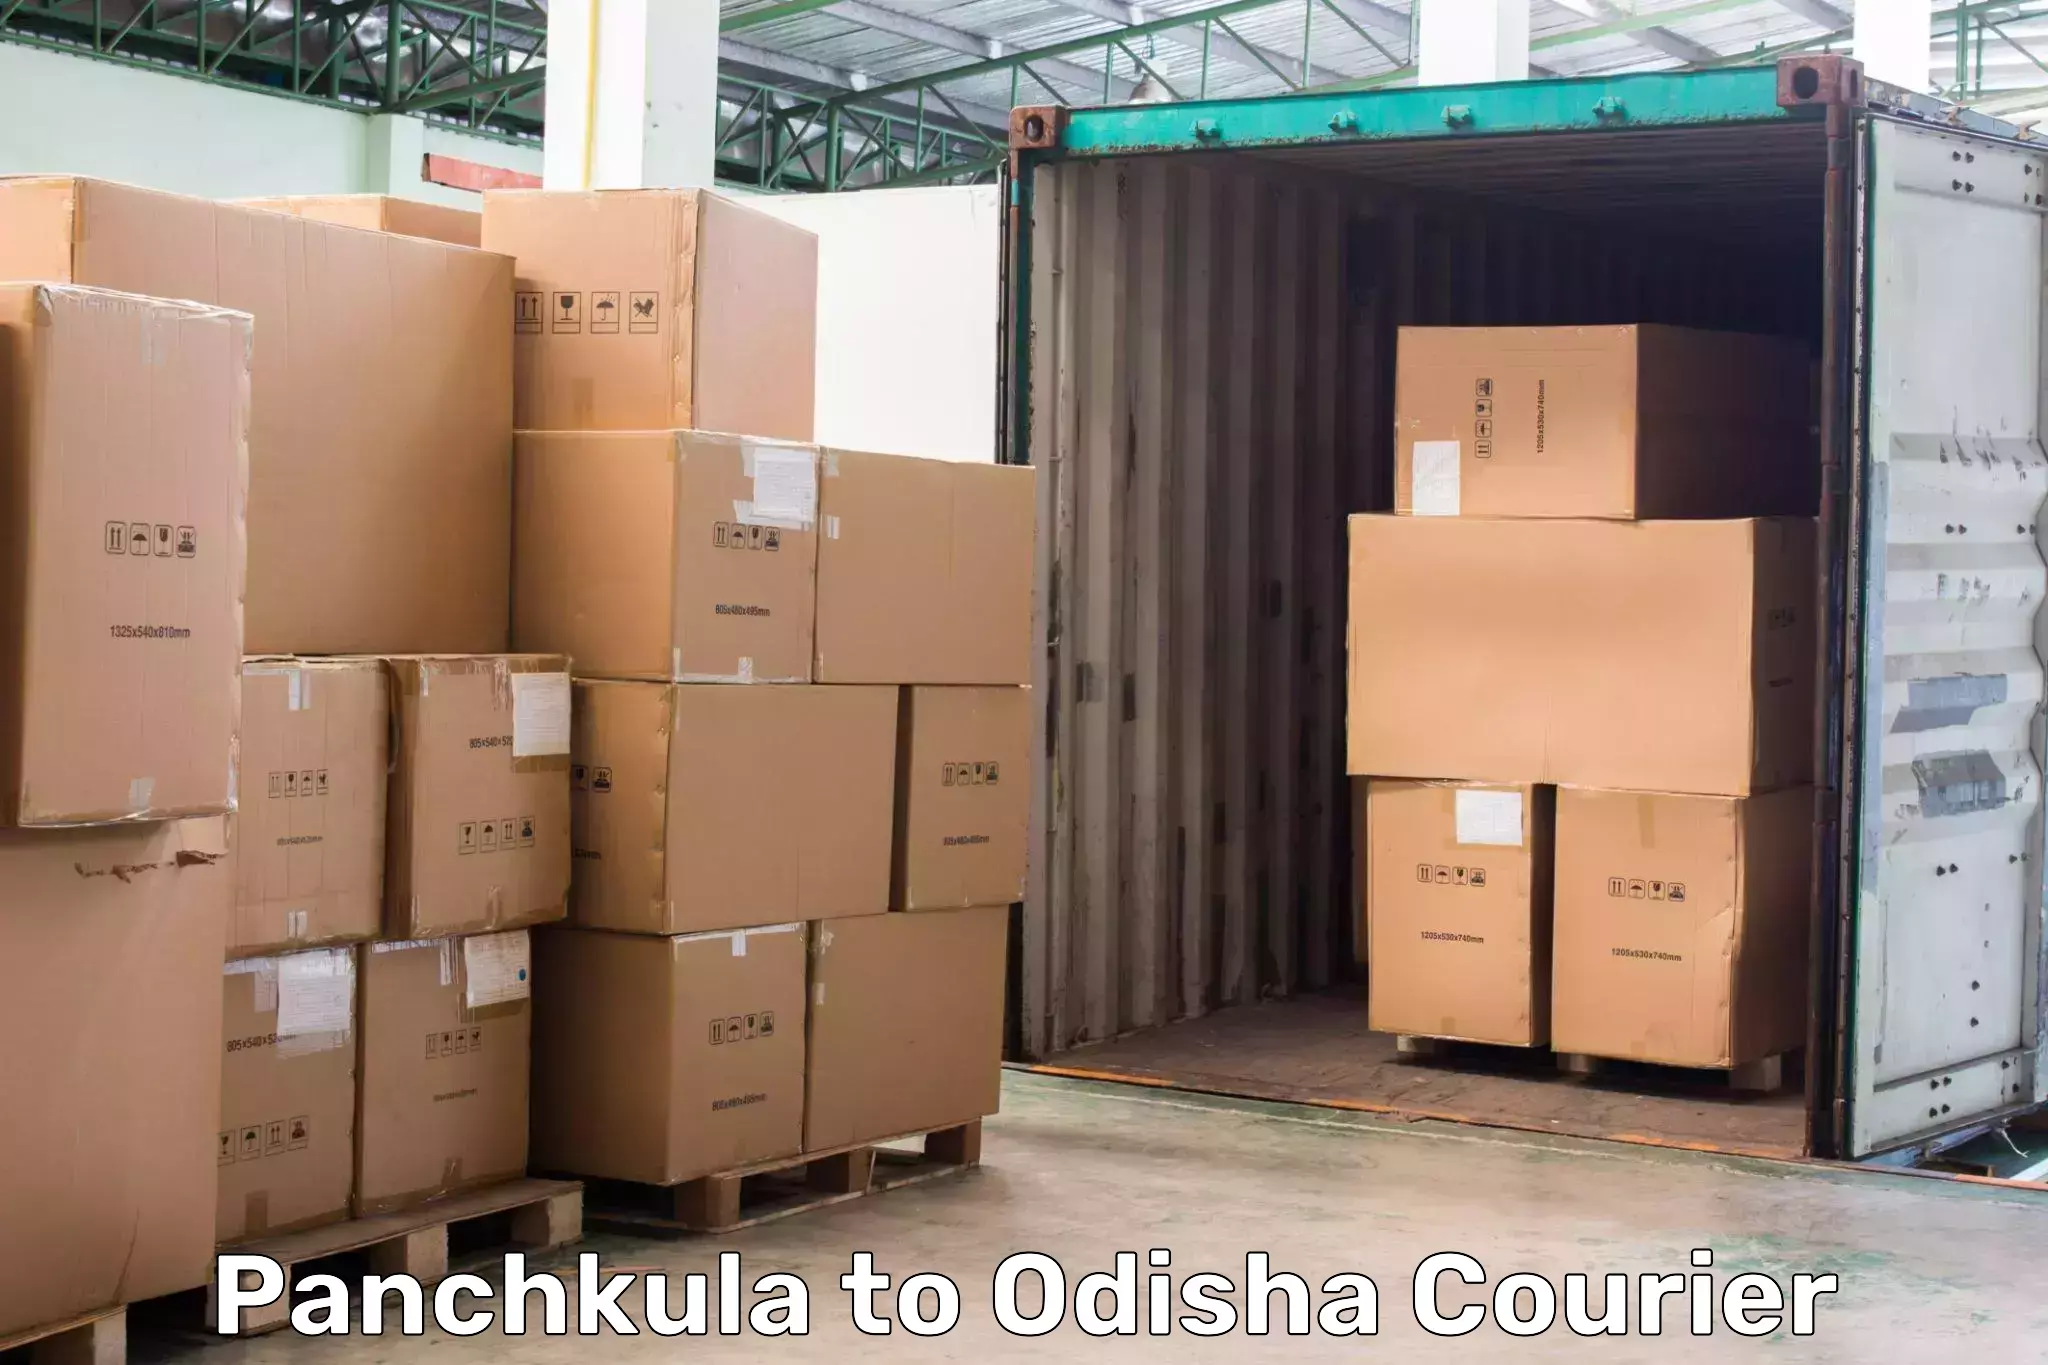 State-of-the-art courier technology Panchkula to Kuchinda